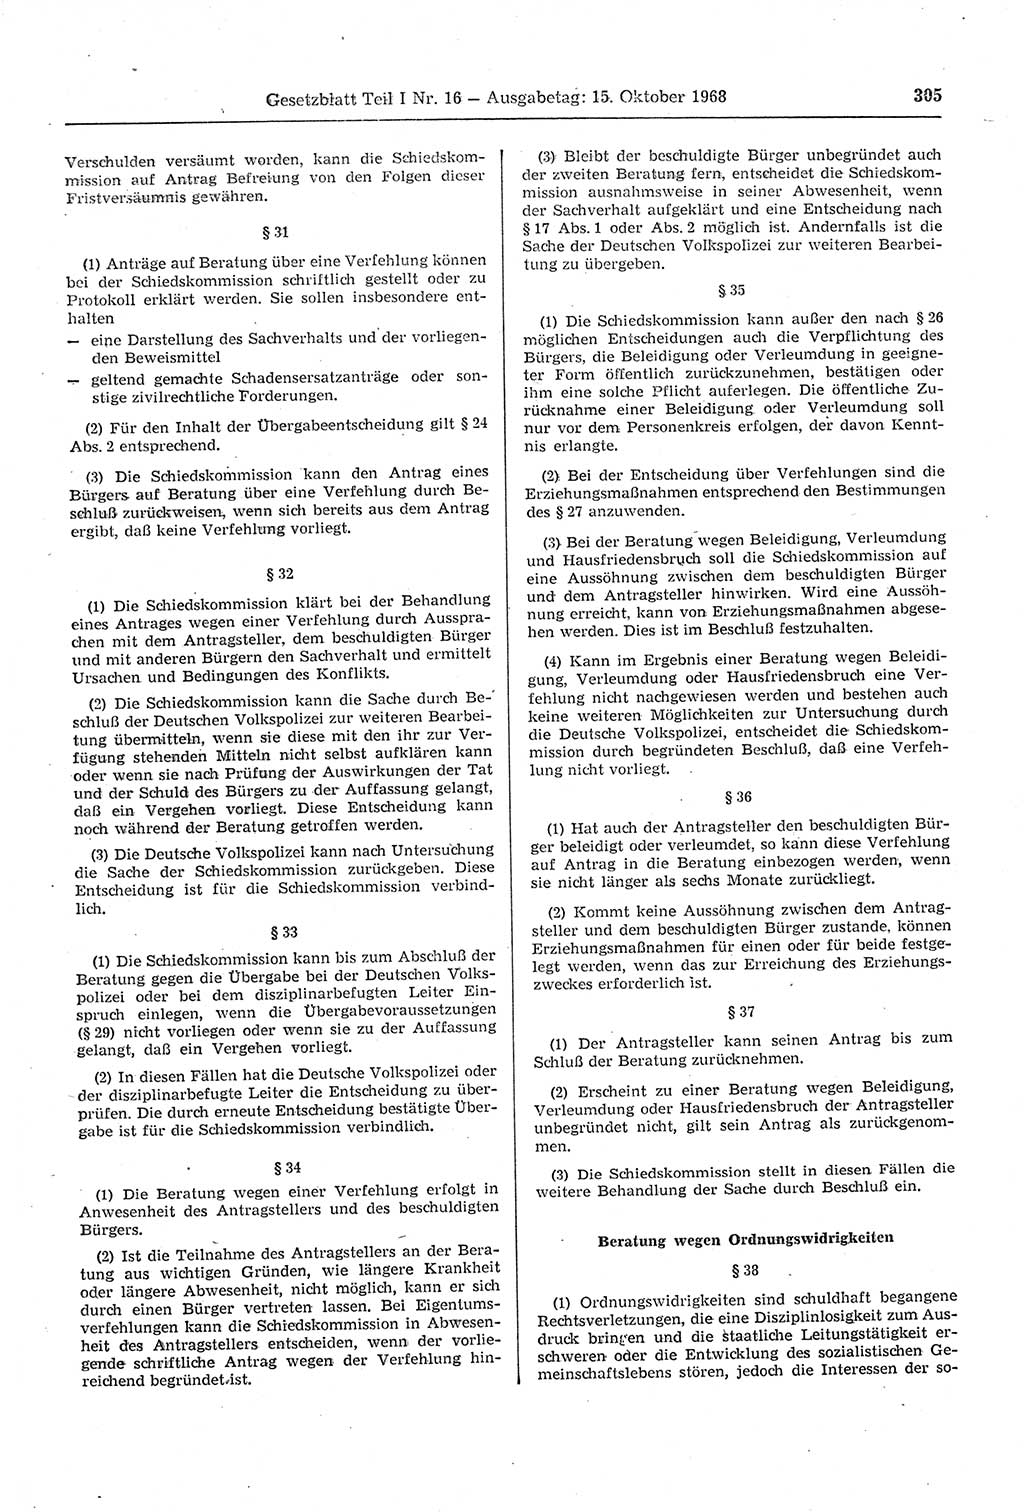 Gesetzblatt (GBl.) der Deutschen Demokratischen Republik (DDR) Teil Ⅰ 1968, Seite 305 (GBl. DDR Ⅰ 1968, S. 305)